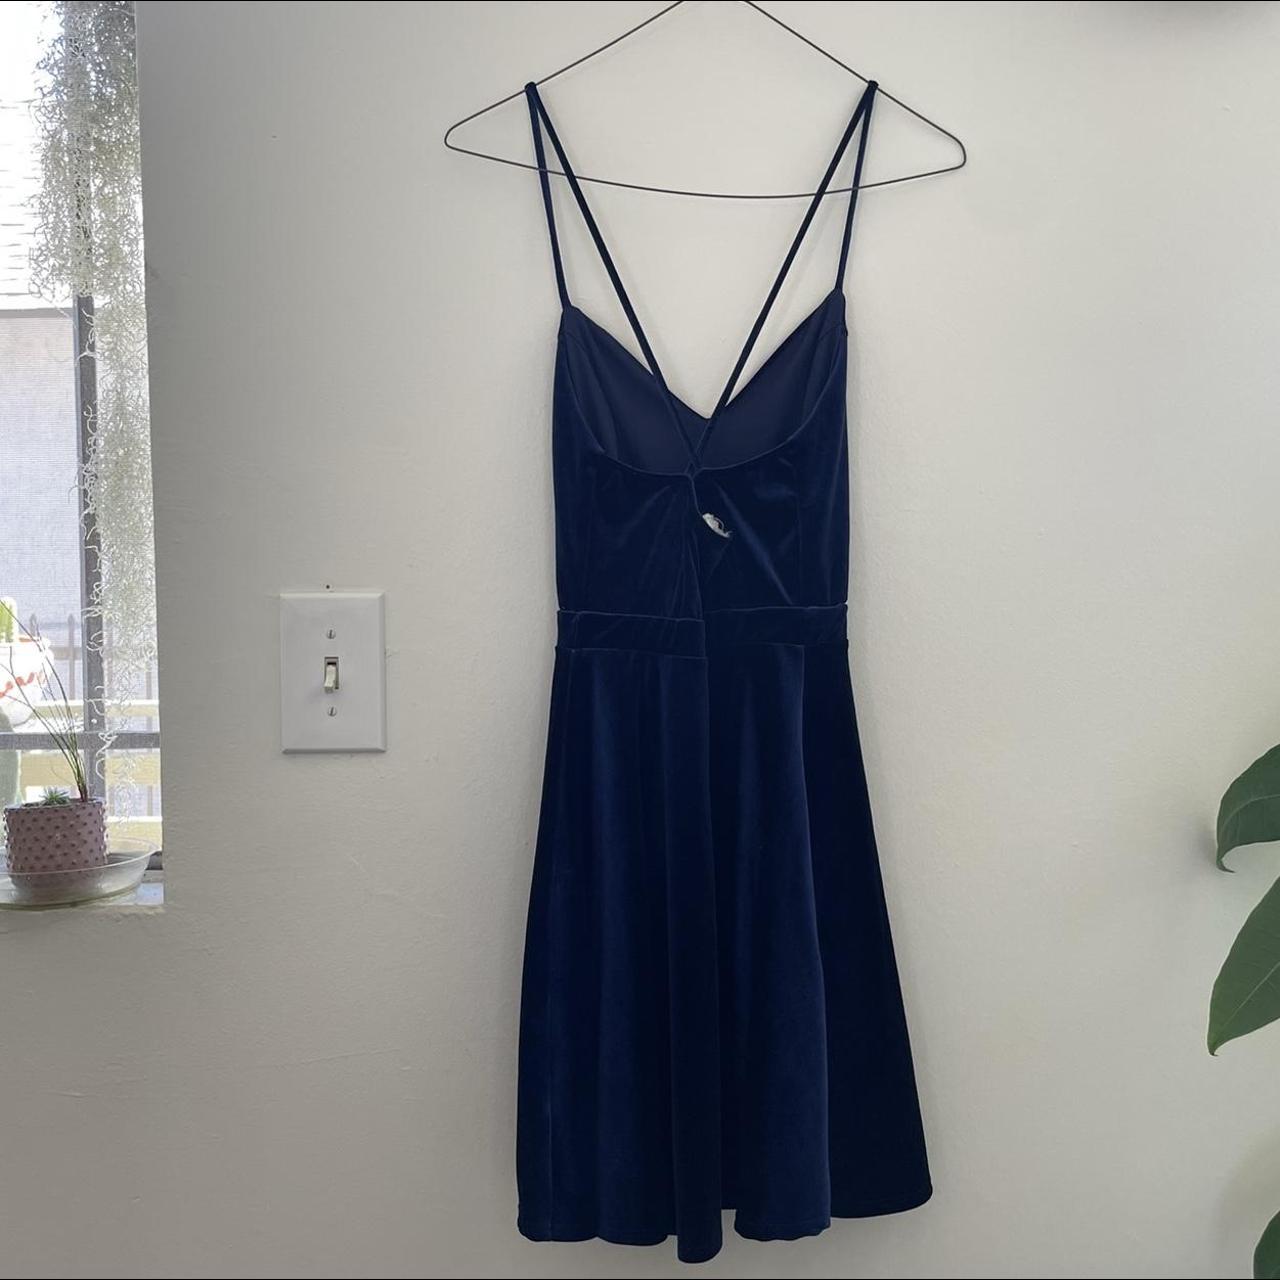 Blue navy velvet short dress from Urban Renewal, the... - Depop